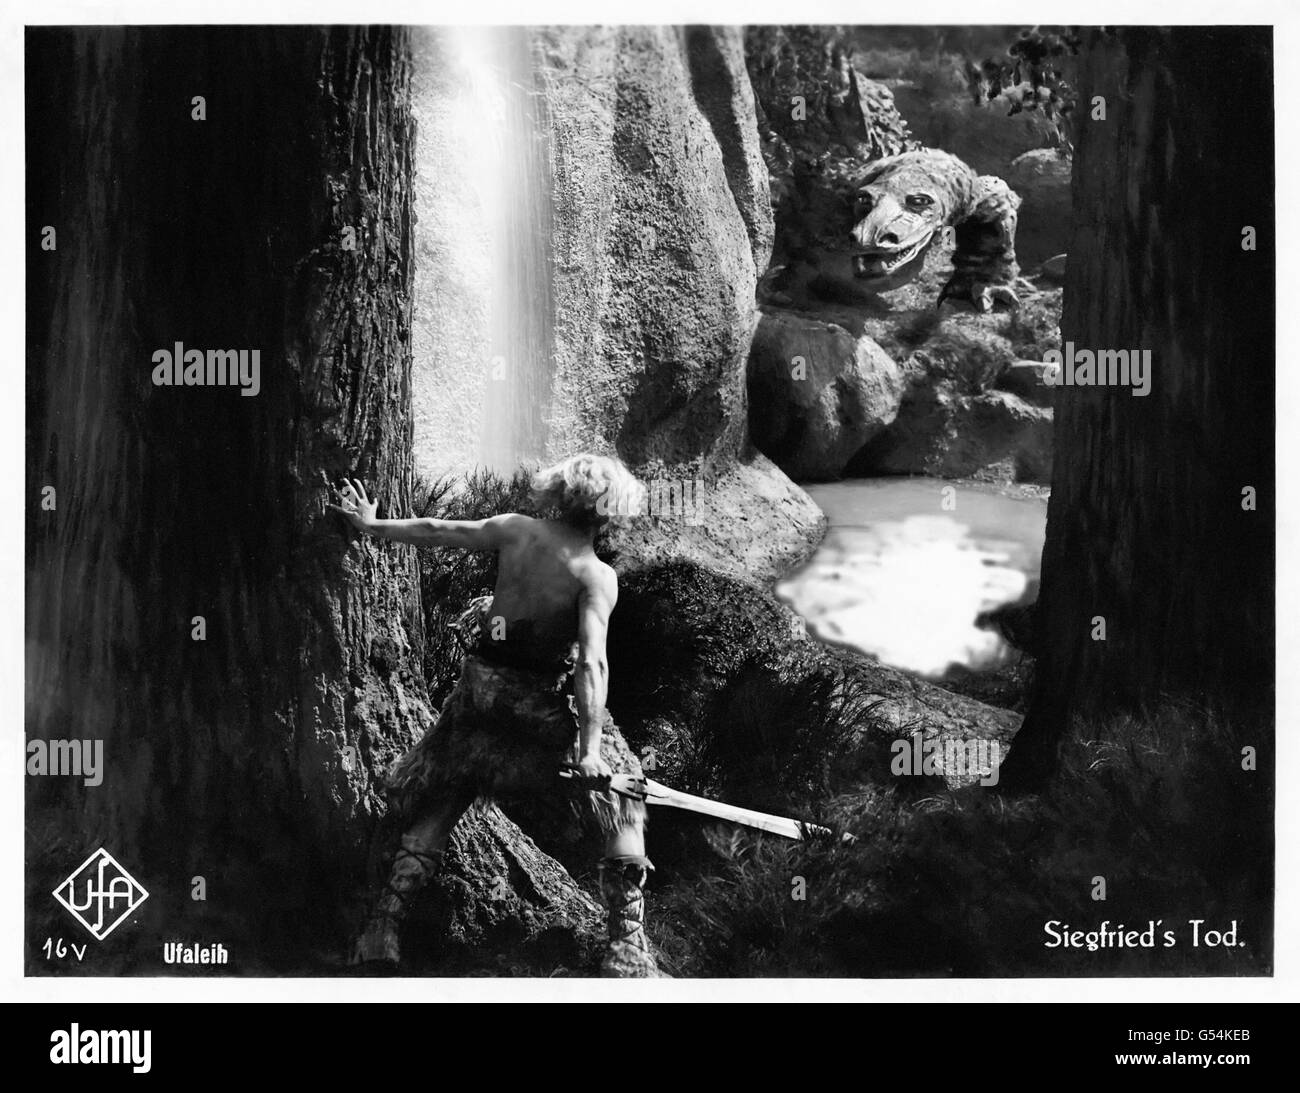 'Die Nibelungen: Siegfried' alemán de 1924 fantasy película dirigida por Fritz Lang (1890-1976) original lobby card mostrando Siegfried (Paul Richter) encuentro con el dragón mágico en la madera. Foto de stock